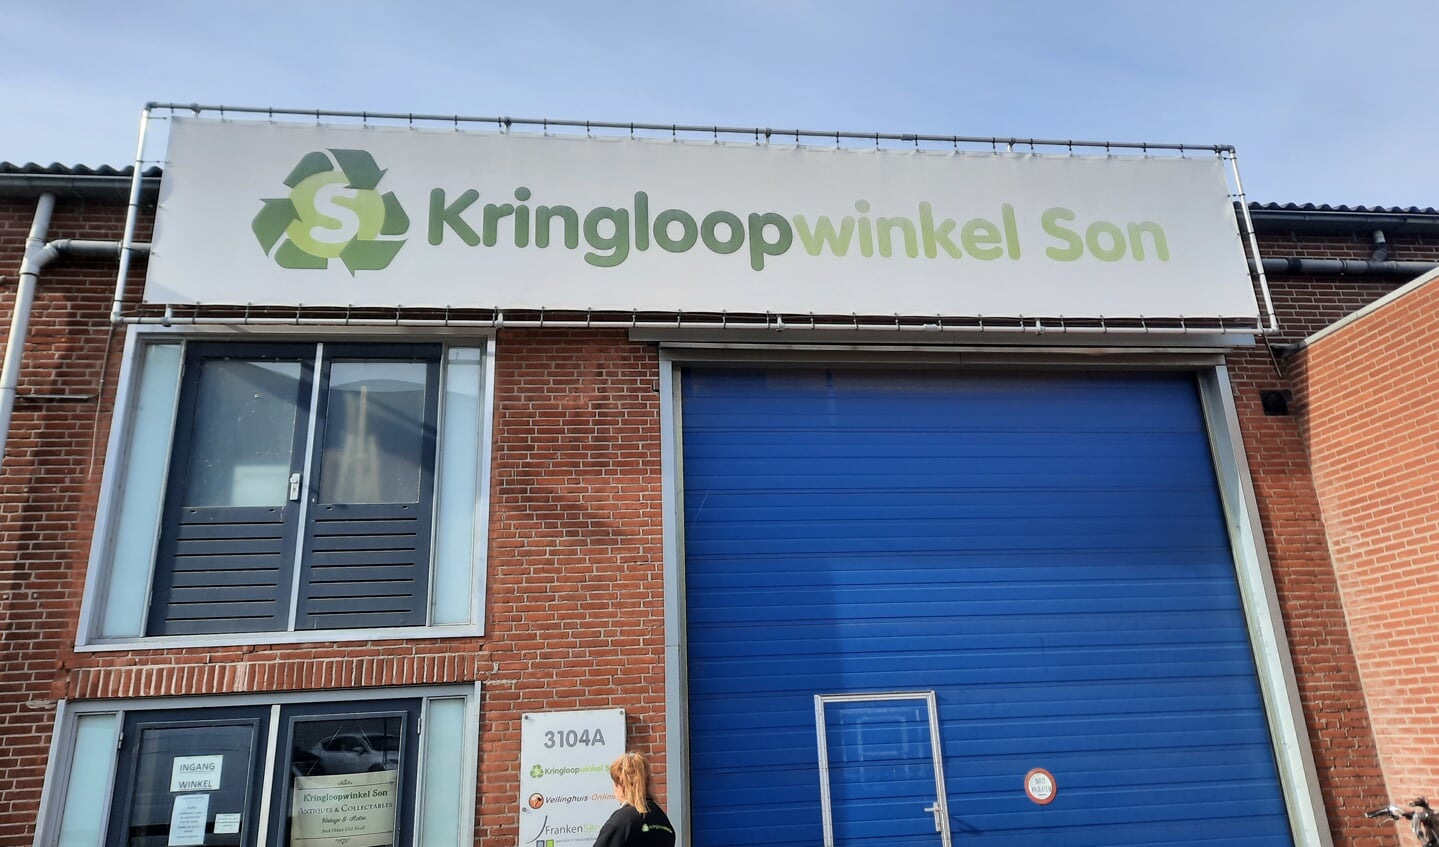 Kringloopwinkel Son